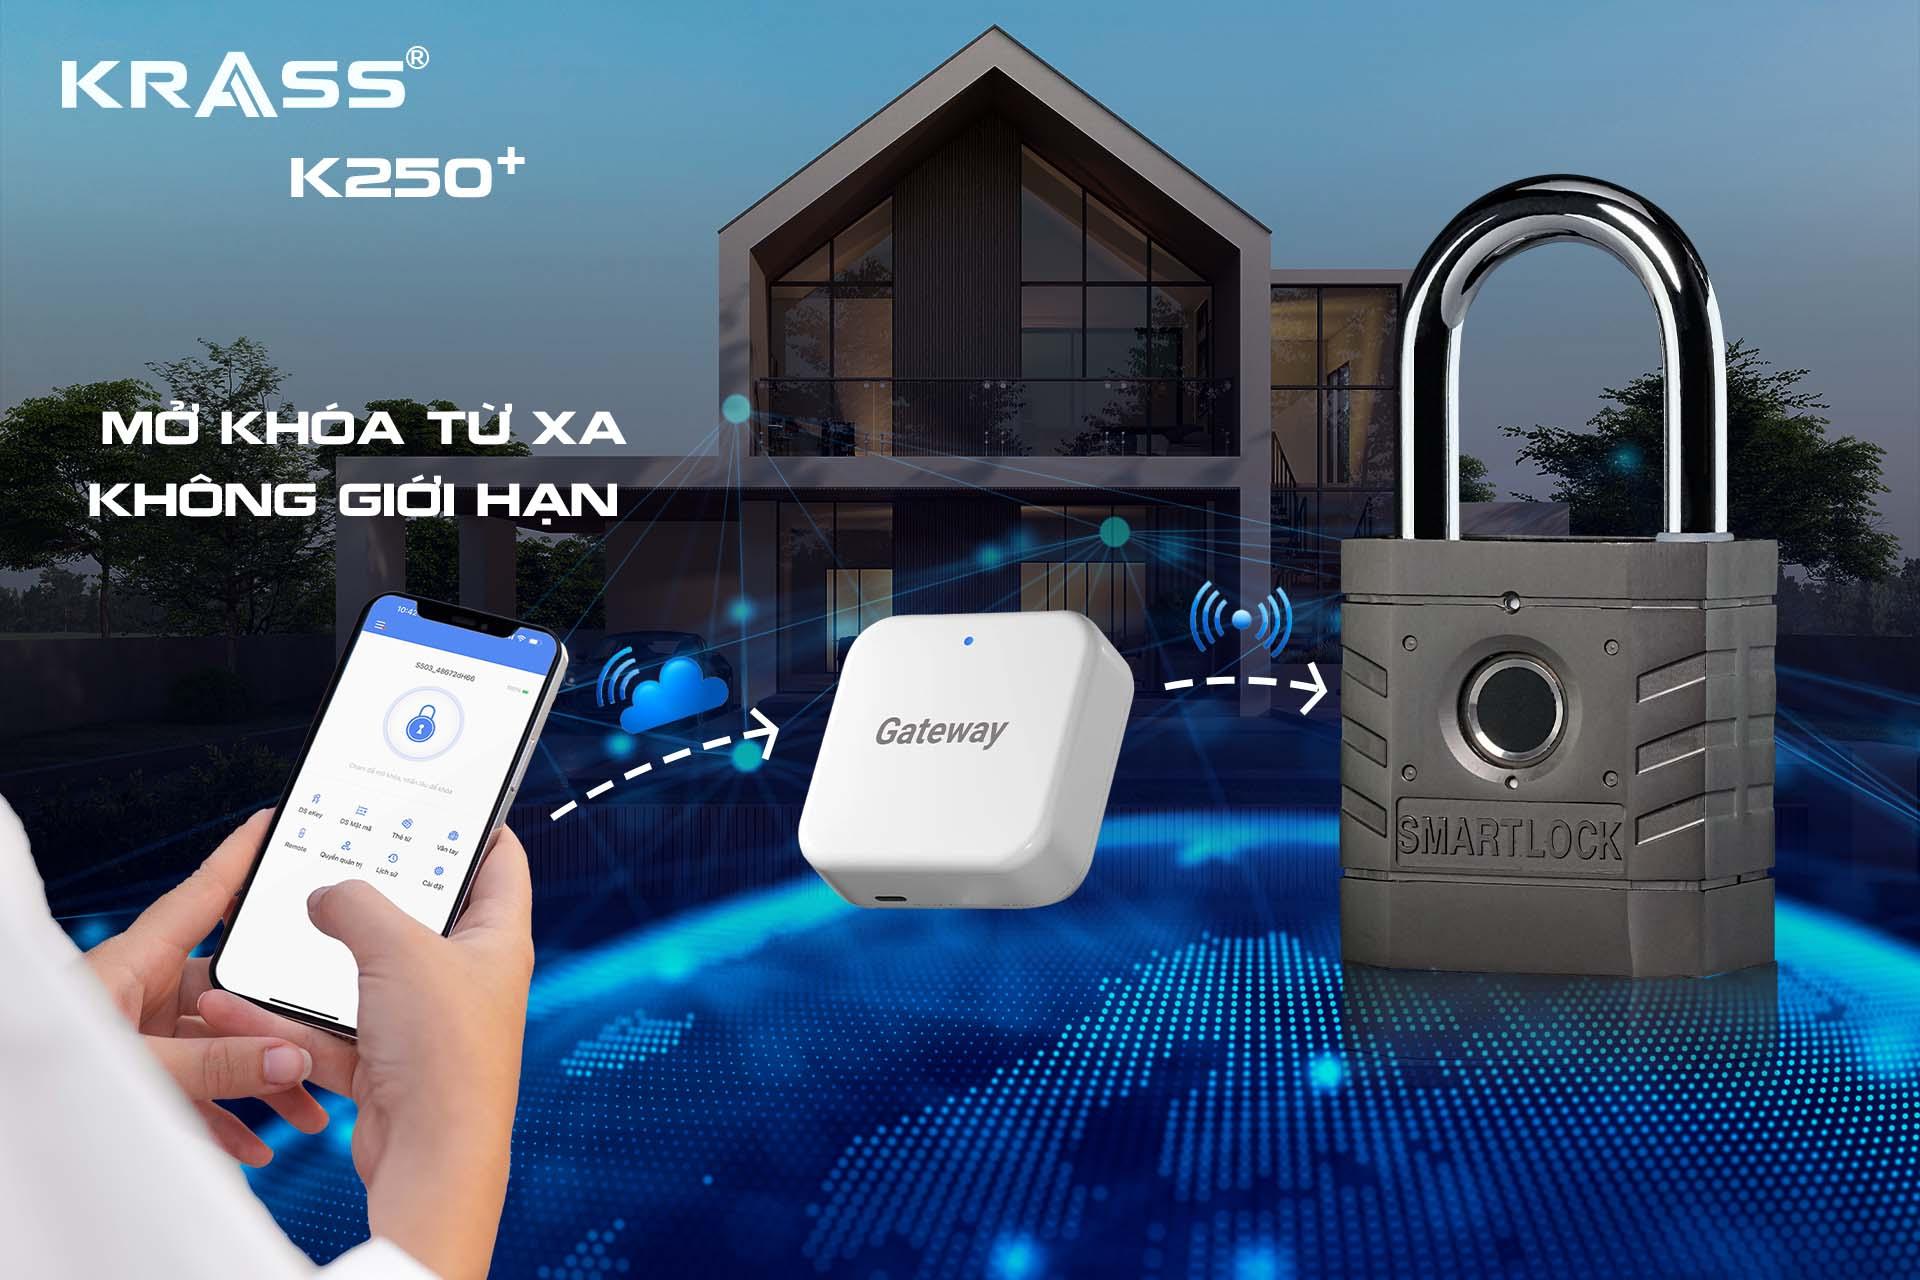 Khóa Krass K250 Plus - Đột phá công nghệ Đức về bảo mật vân tay - 3